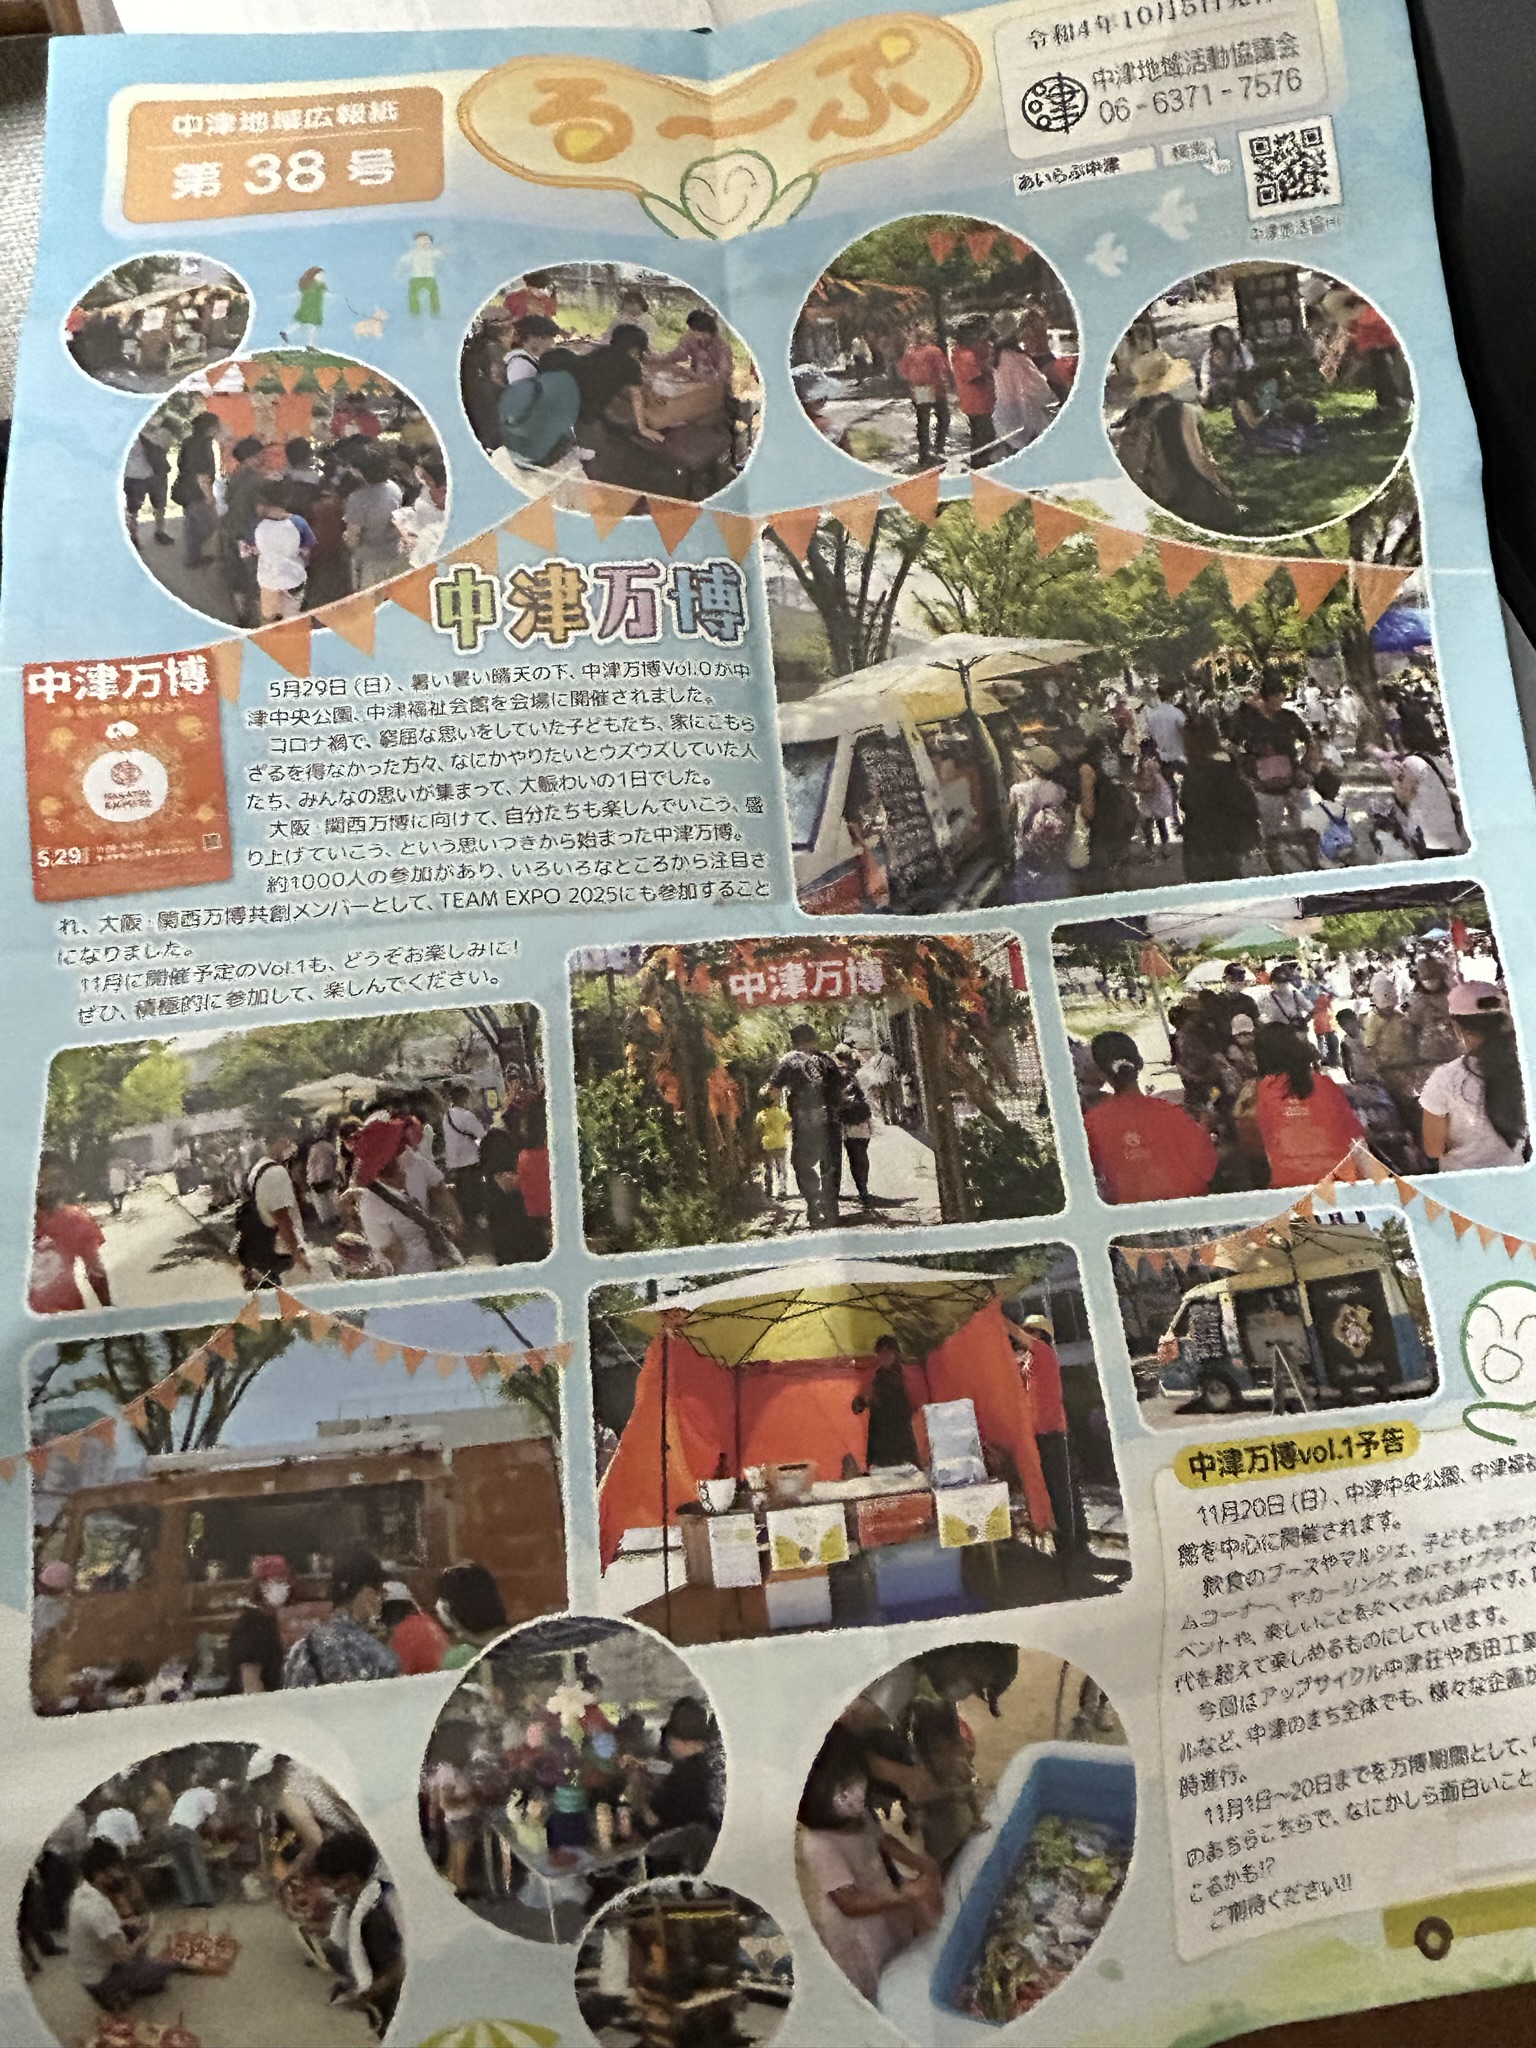 中津地域広報誌「るーぷ」に掲載いただきました。